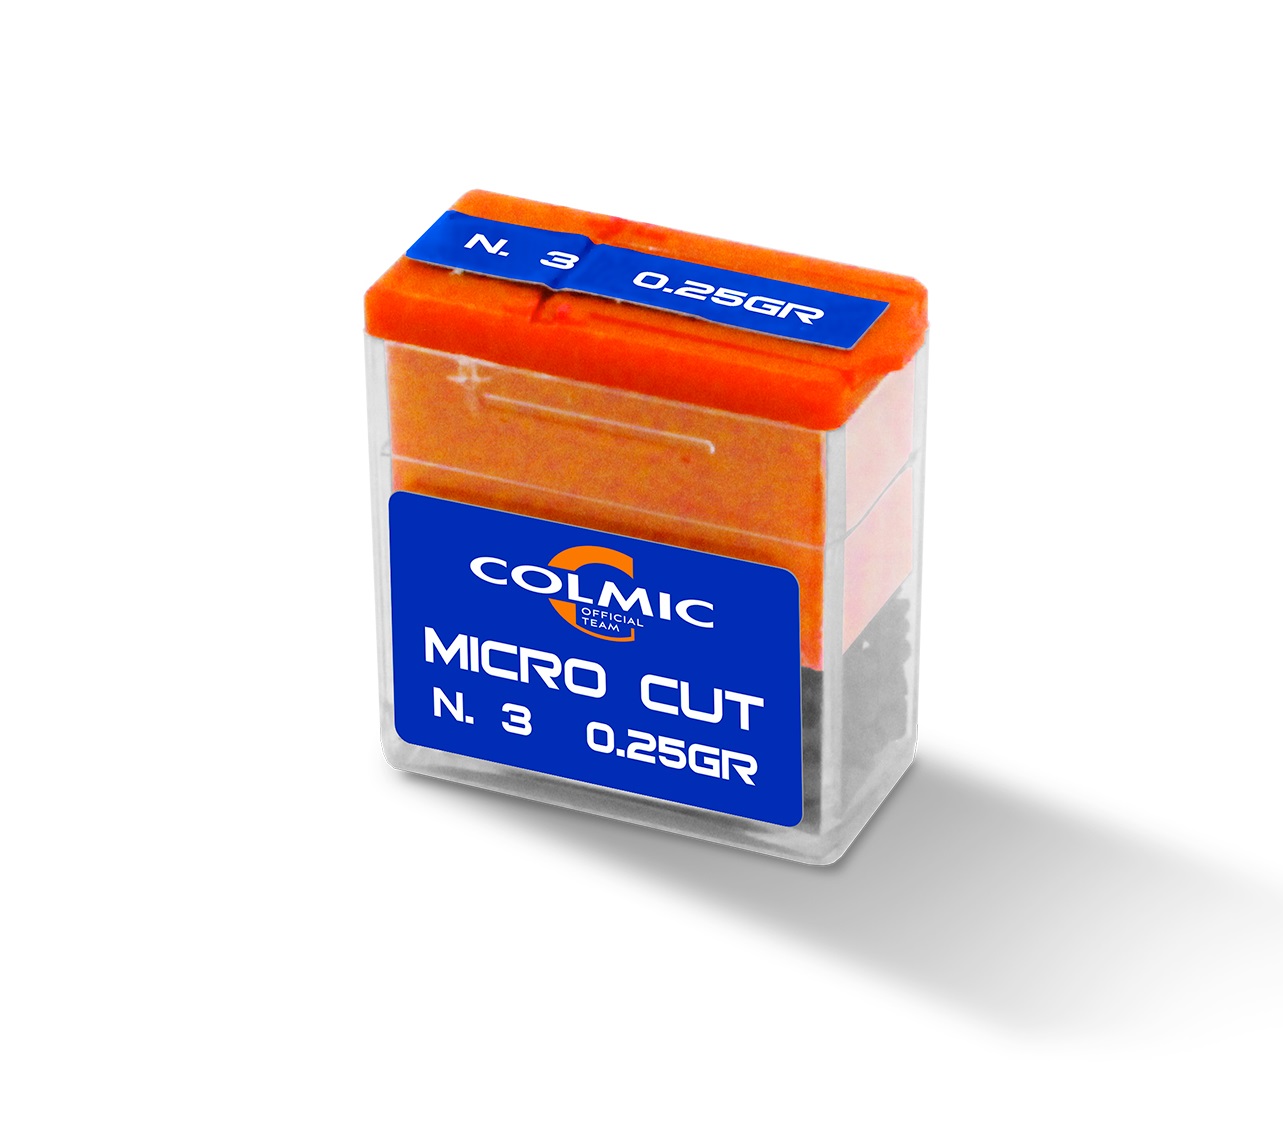 Colmic Dispenser Micro Cut Schrotblei N. 8 (0.064g)